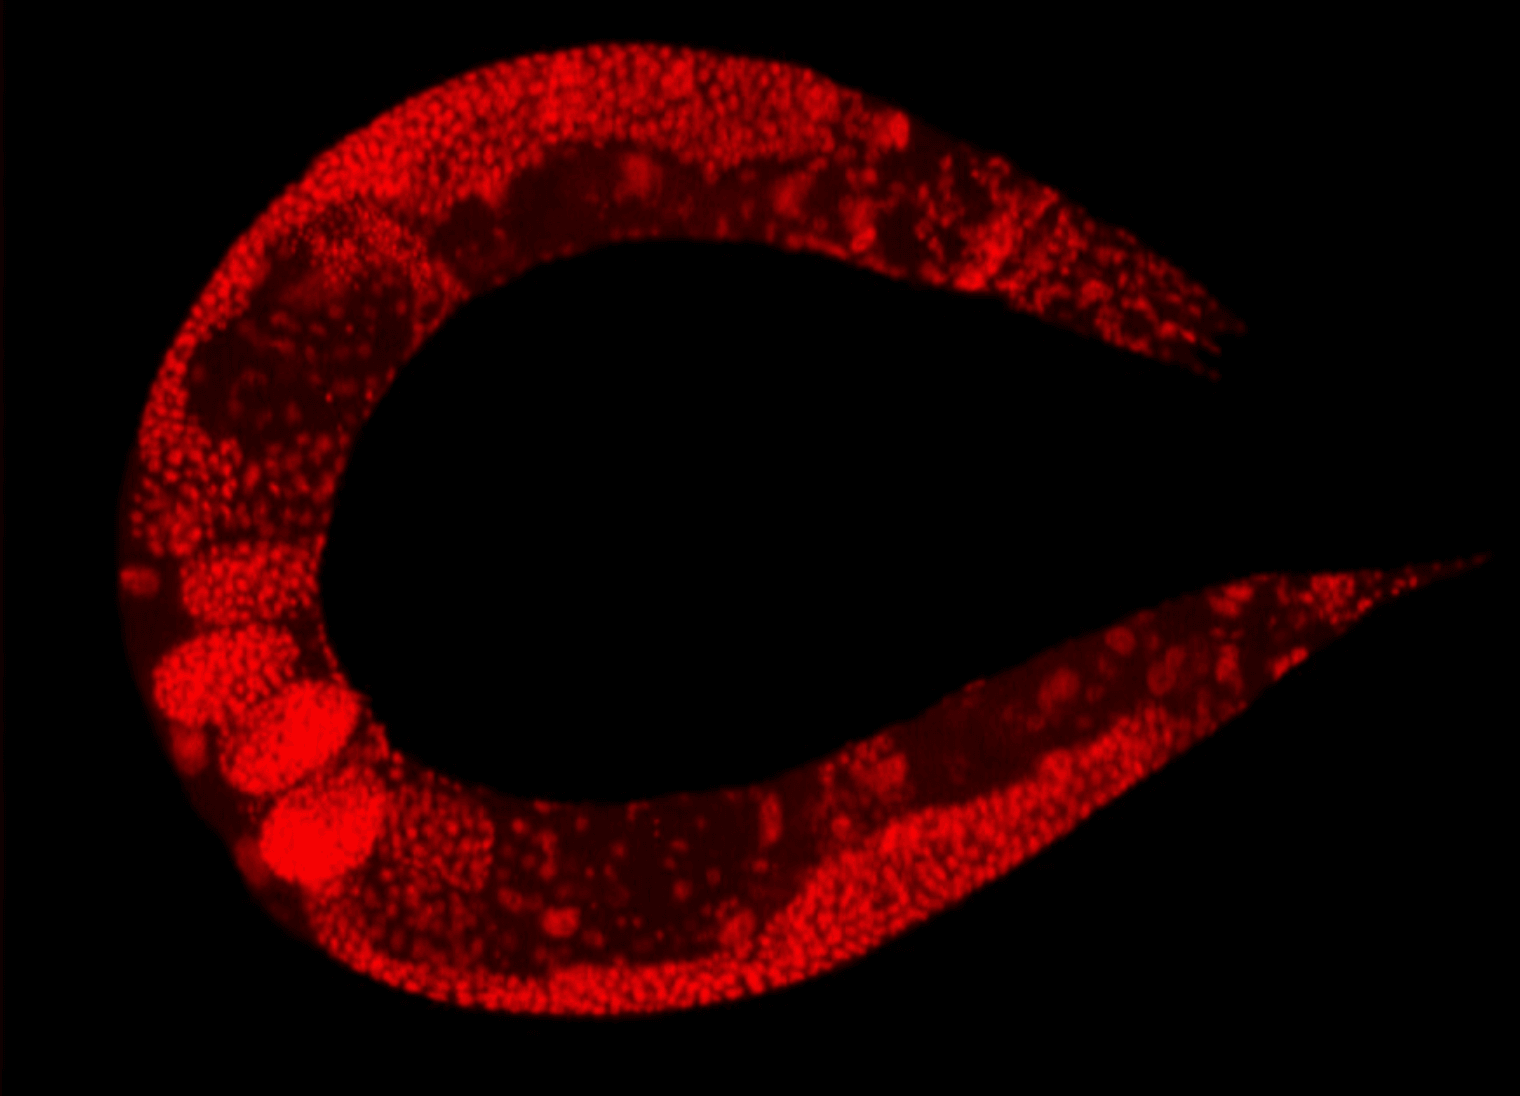 Caenorhabditis elegans
